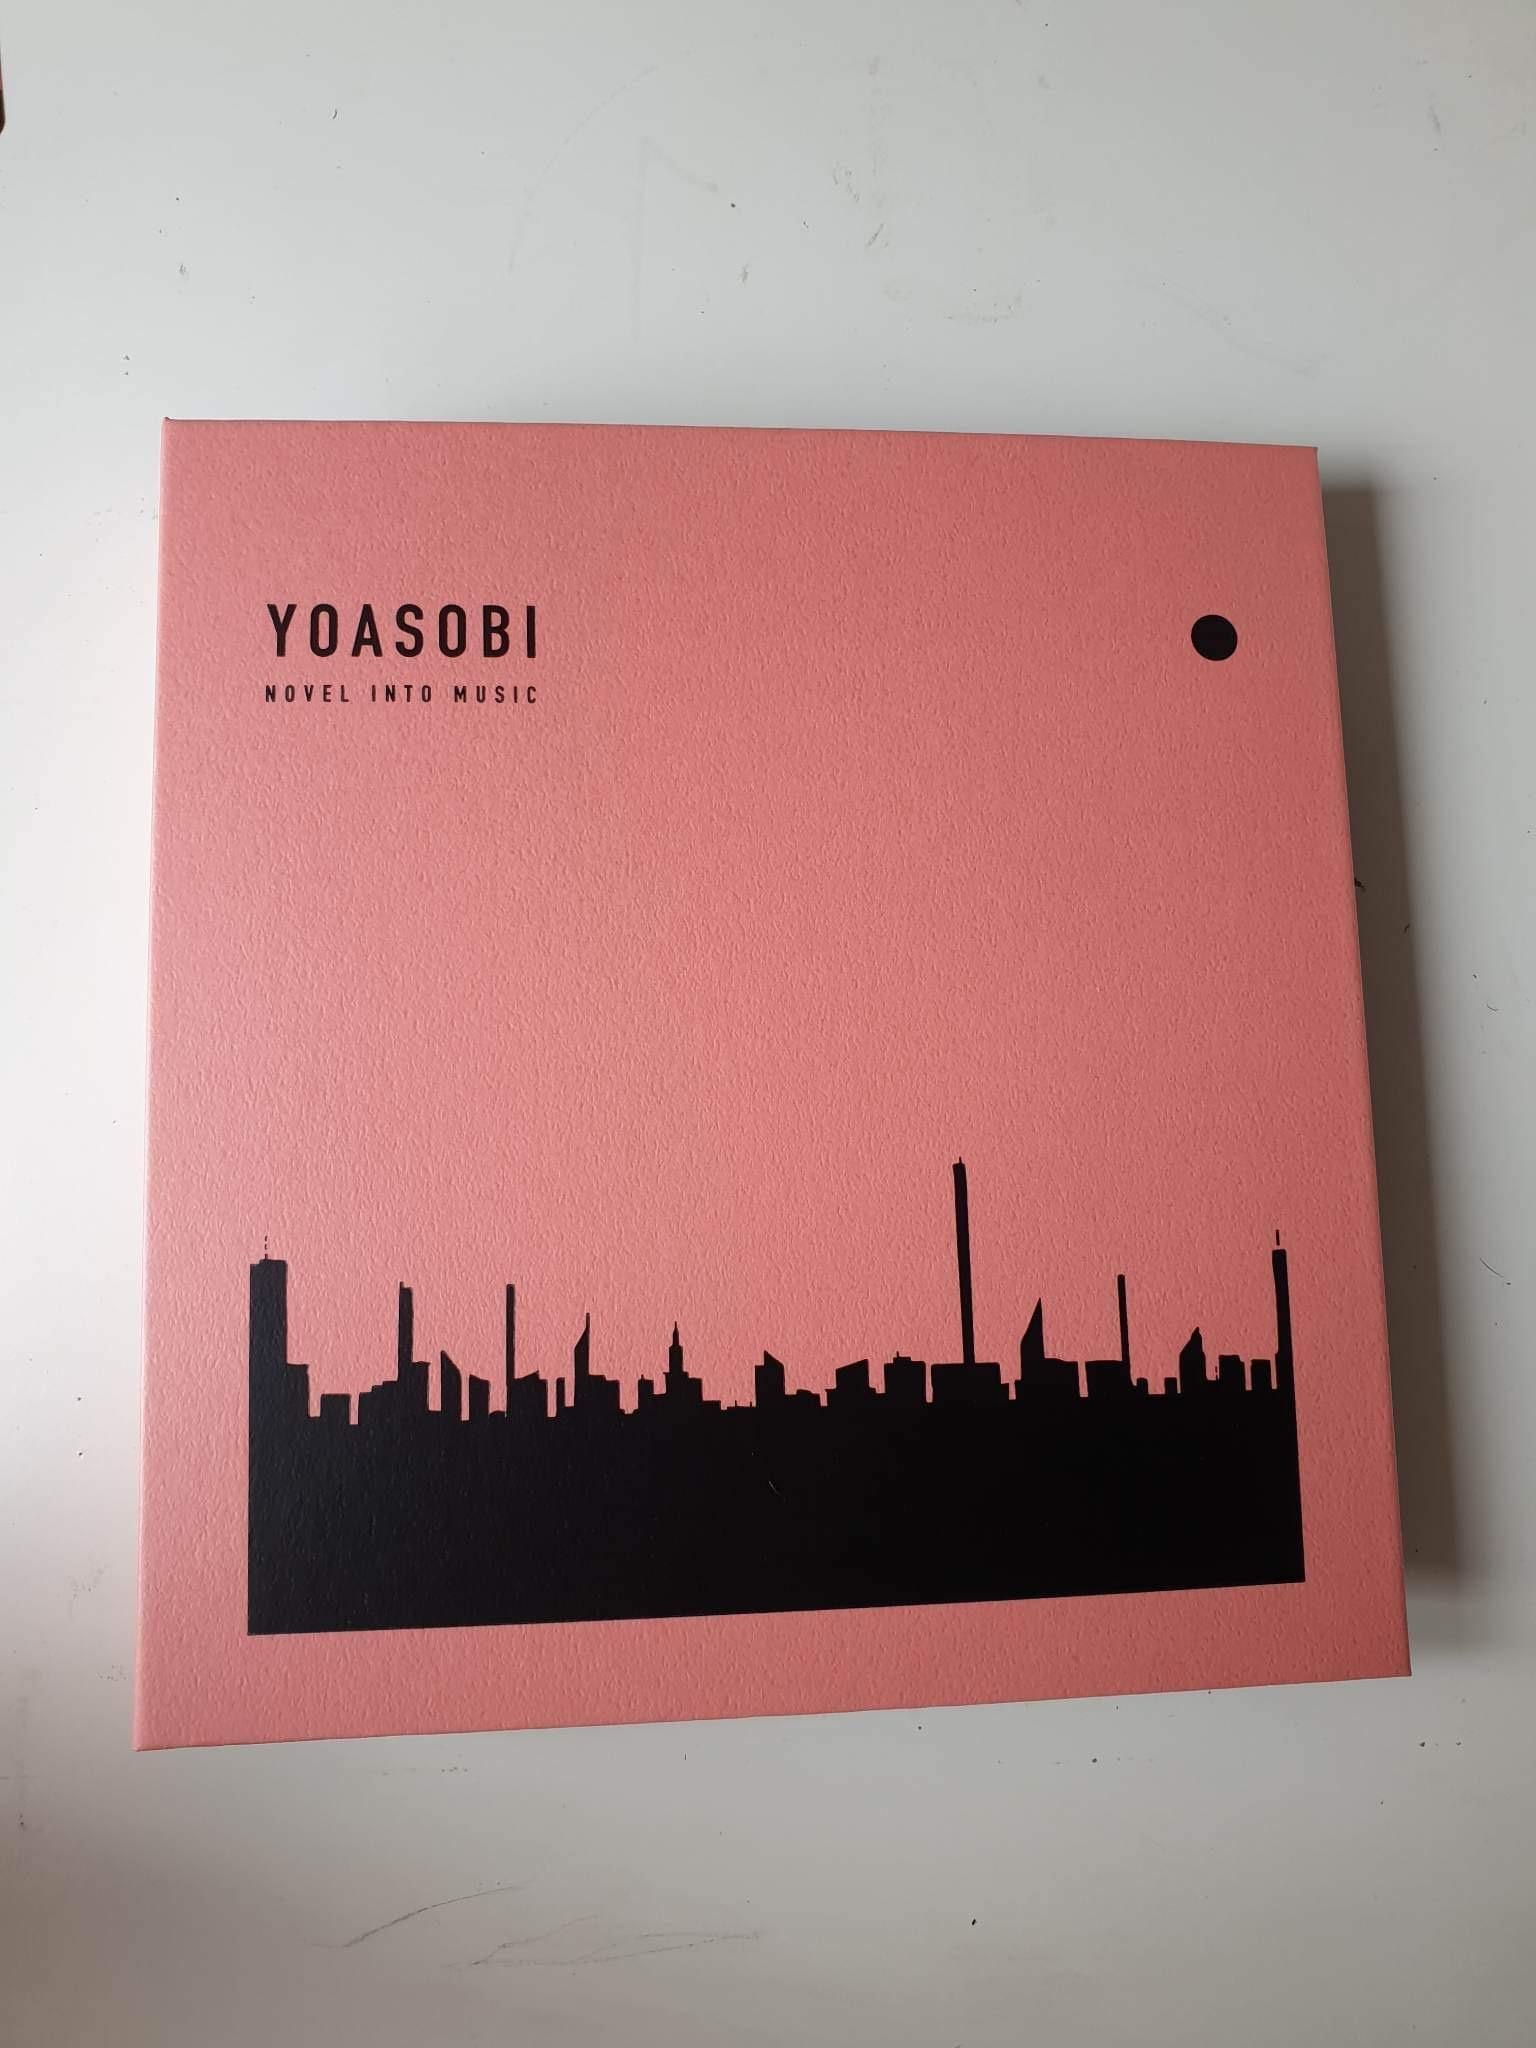 樂淘代購煤爐心得~YOASOBI BOOK 1專輯開箱- s1070013的創作- 巴哈姆特